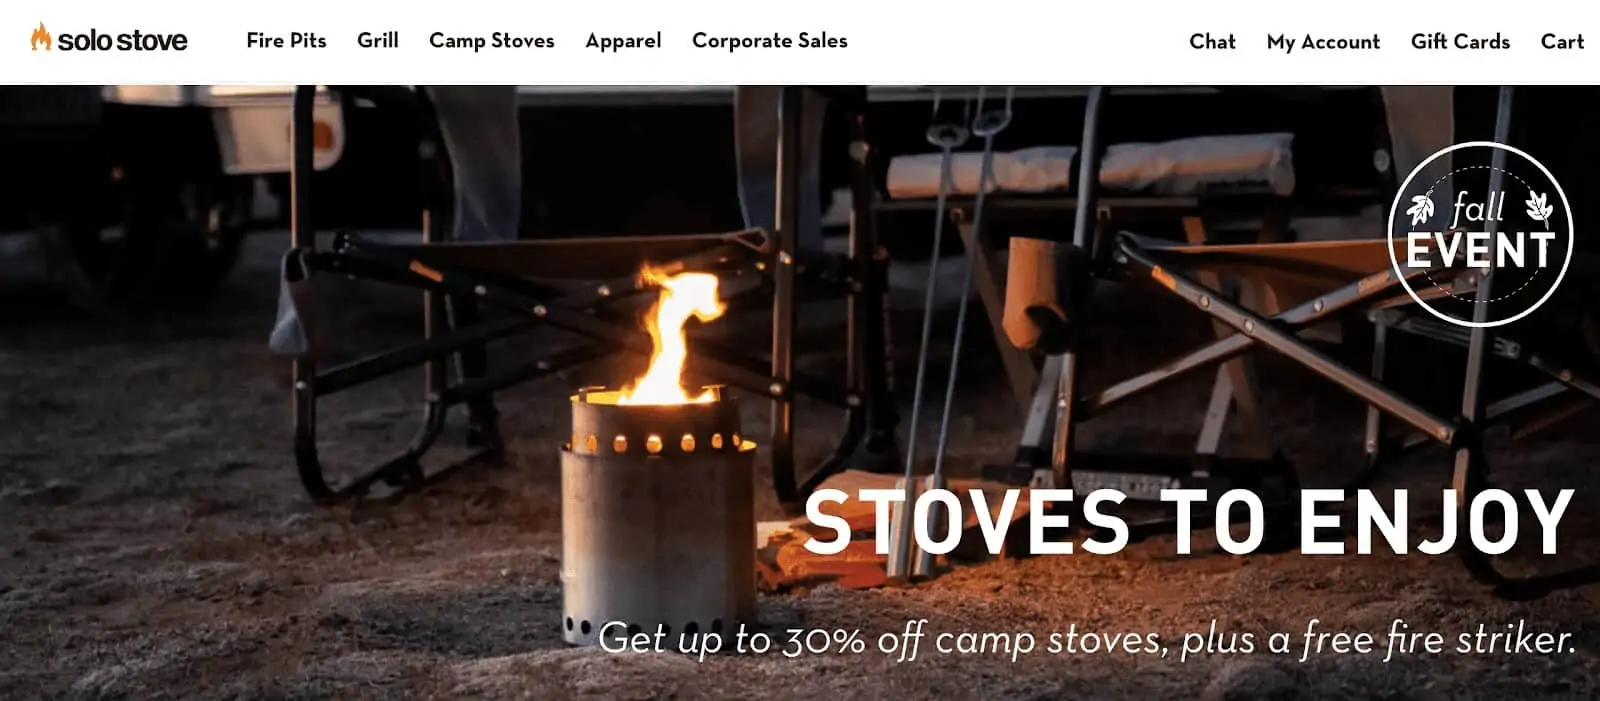 solo stove website design